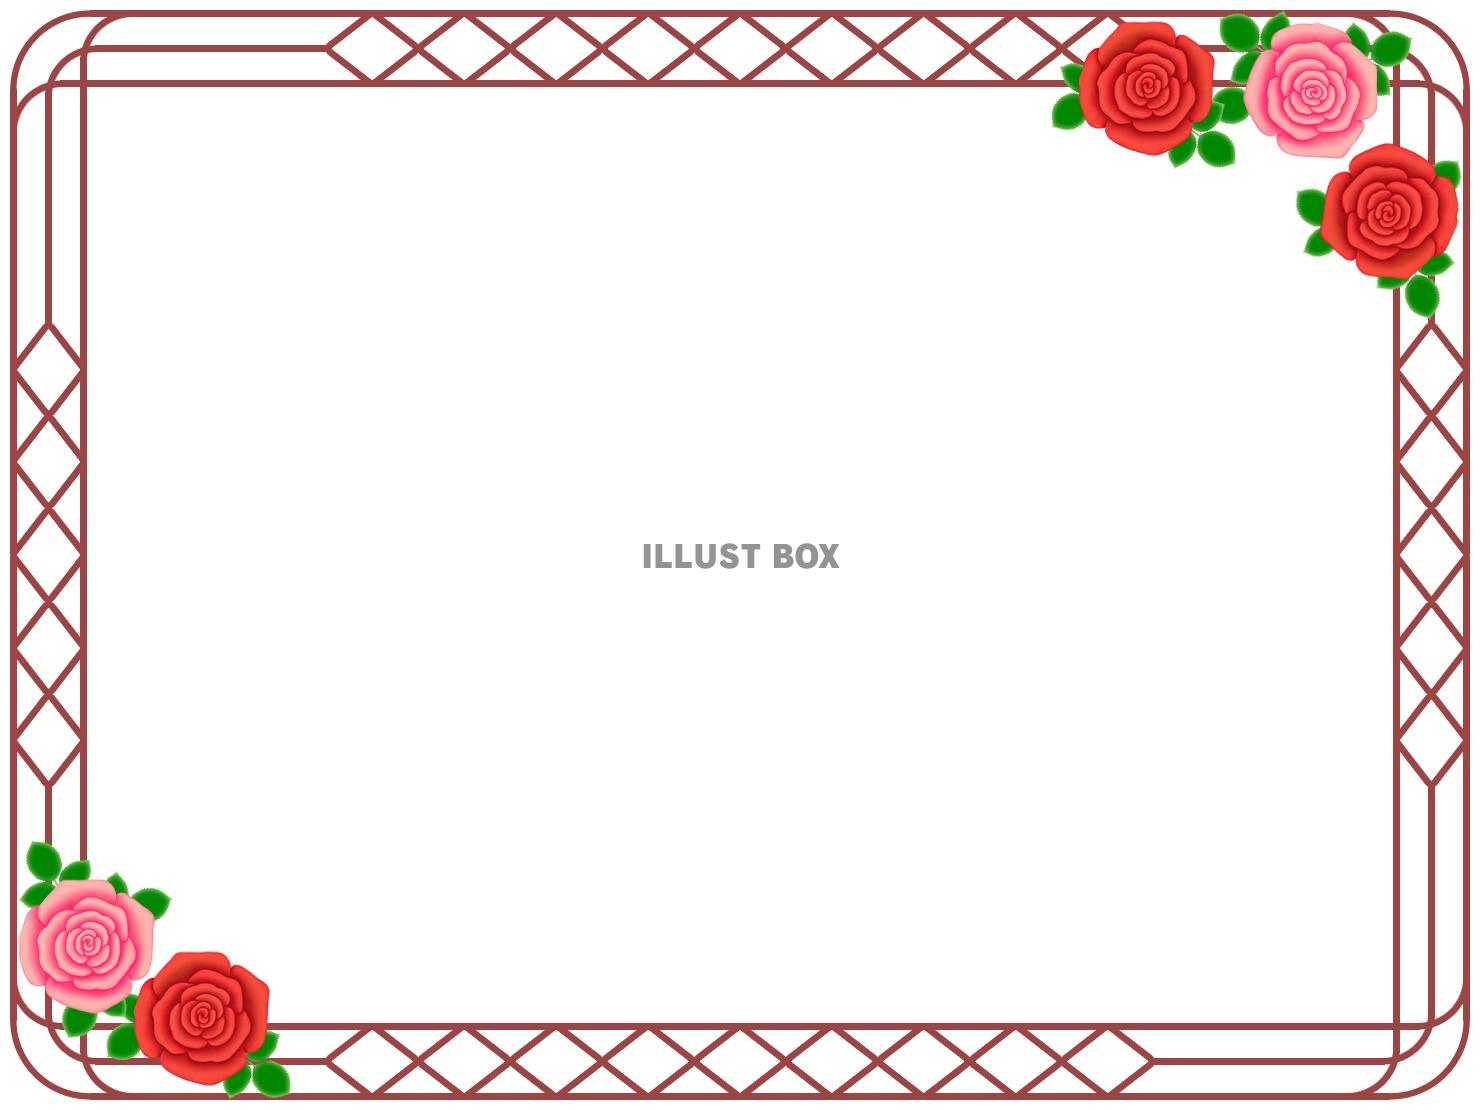 無料イラスト 薔薇の花フレーム花模様飾り枠素材イラスト ベクターあり